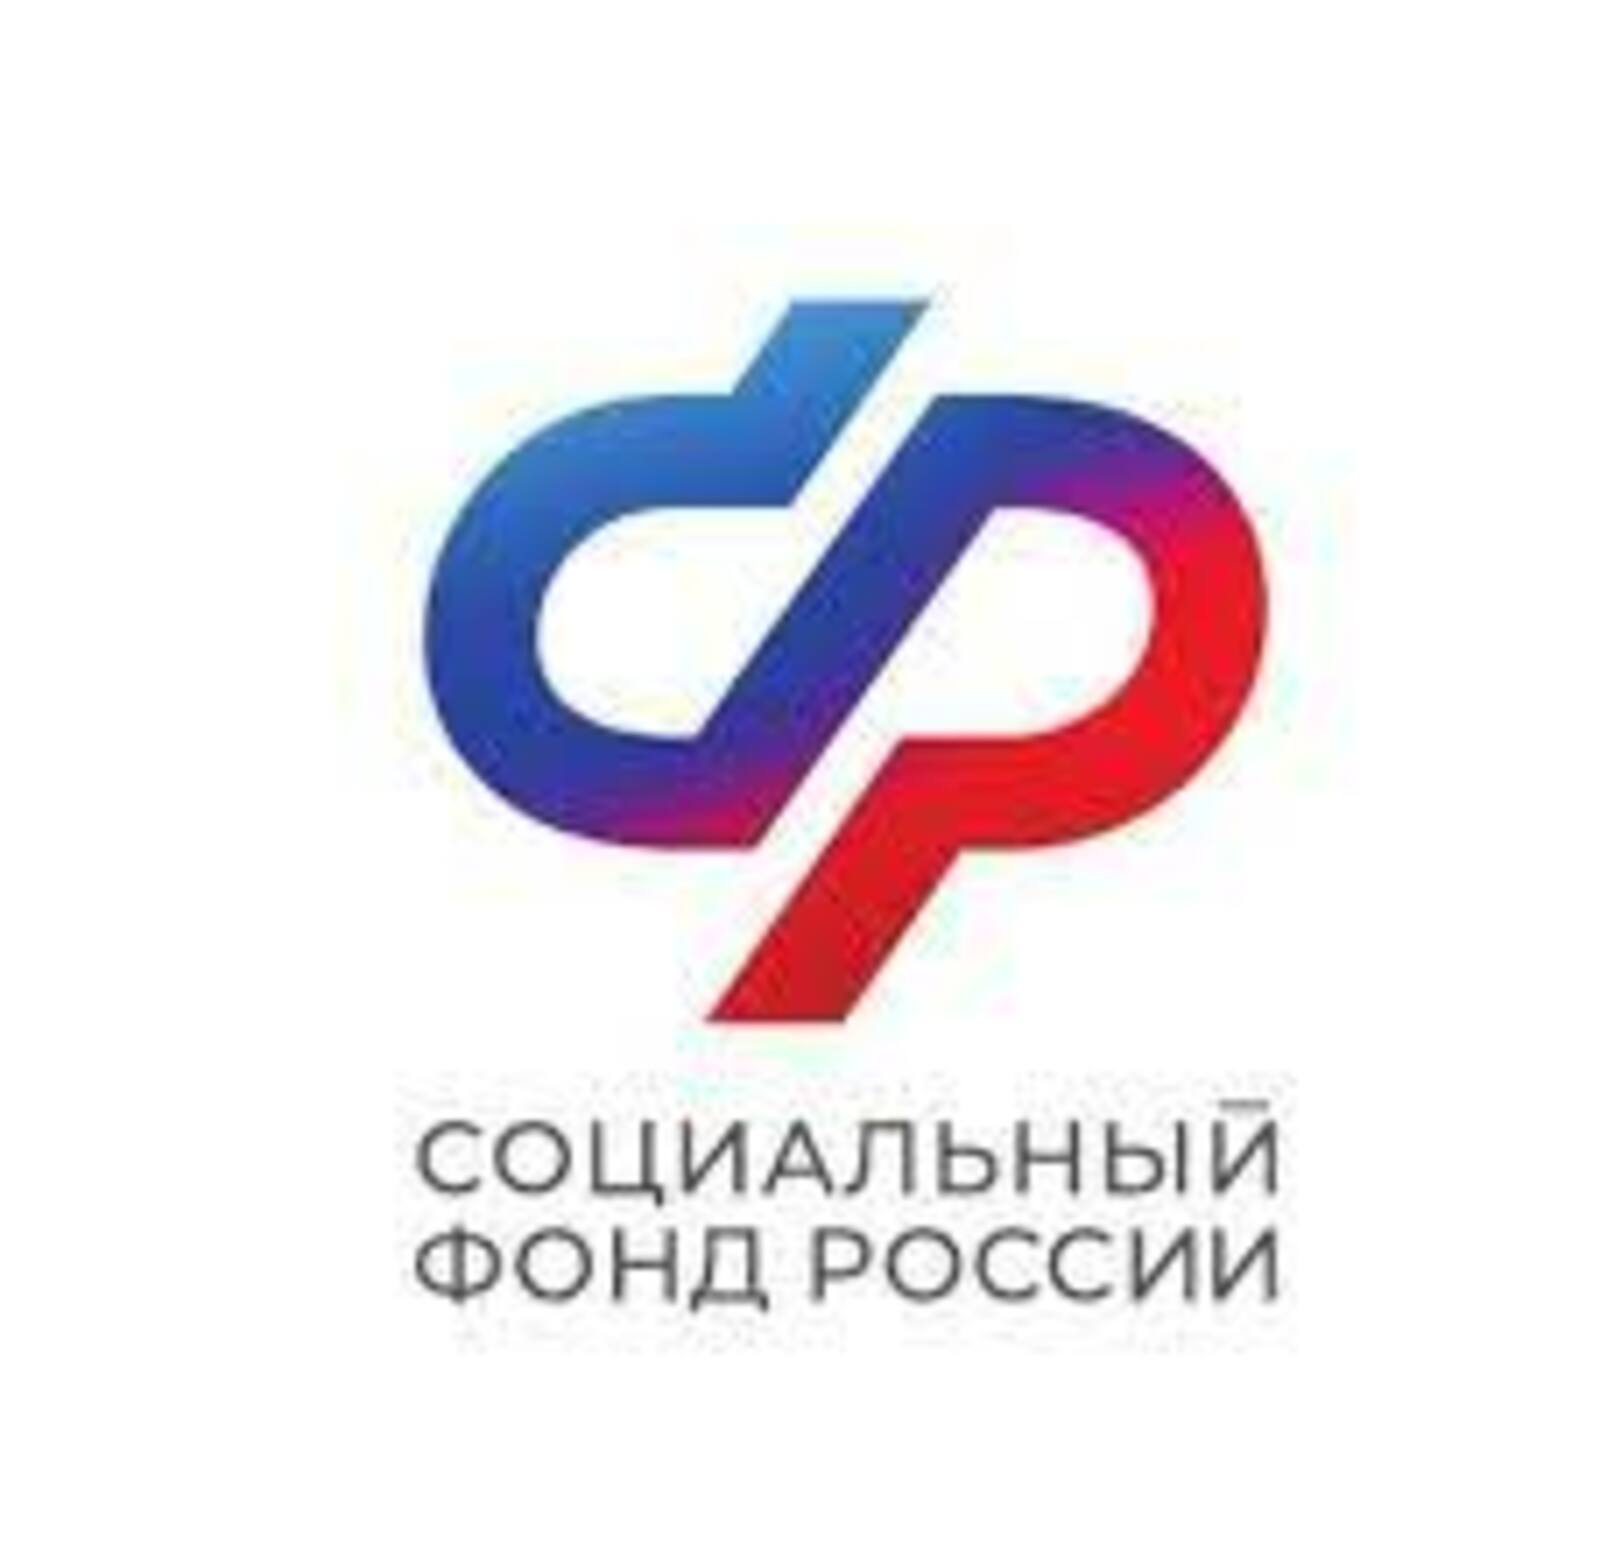 Пилотный проект по профилактике профзаболеваний, реализованный Отделением СФР в Башкортостане, показал улучшение состояния здоровья работников